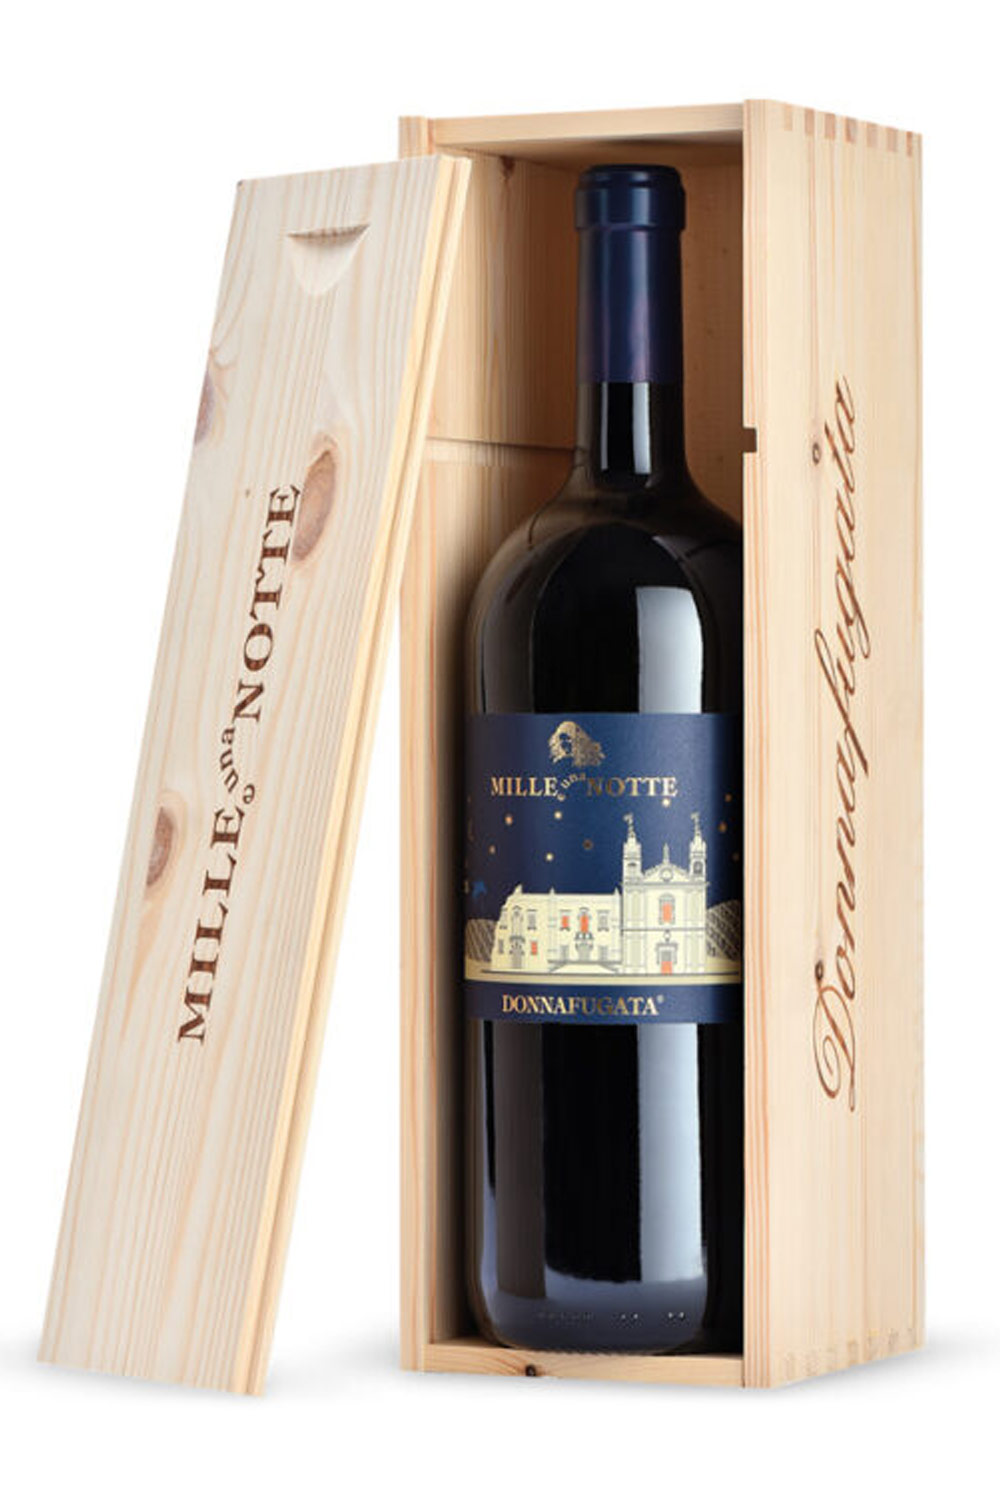 Donnafugata Mille e una Notte Terre Siciliane DOC 2019 Magnum mit Holzkiste  | Online kaufen bei Senti Vini - Weine aus Italien